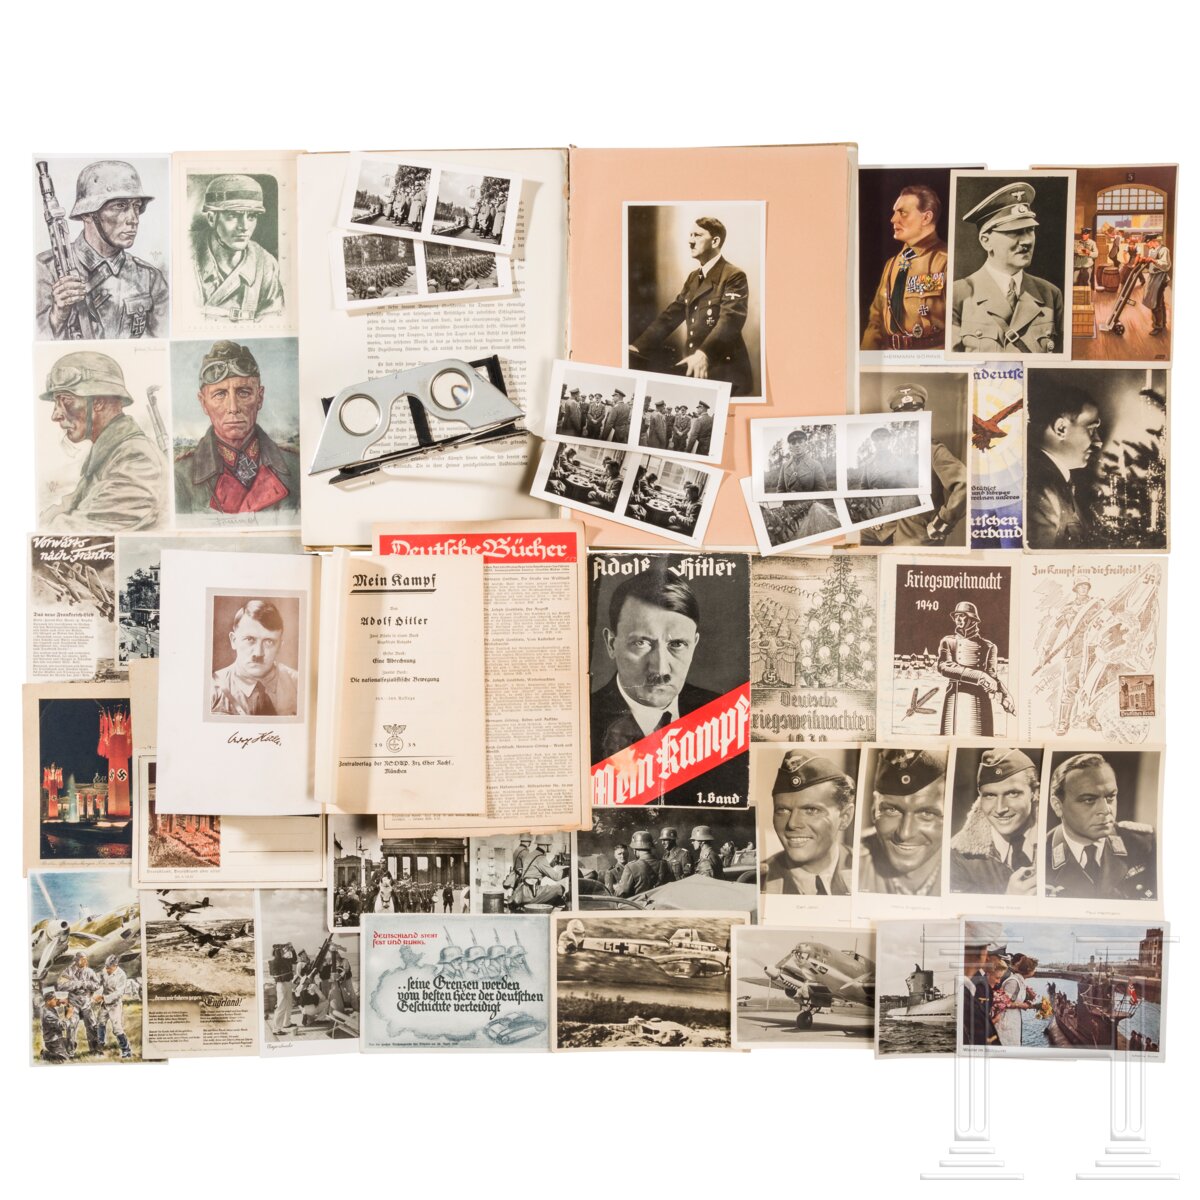 Konvolut mit ca. 110 Postkarten, zwei Büchern "Mein Kampf" und Raumbildalbum "Die Soldaten des Führe